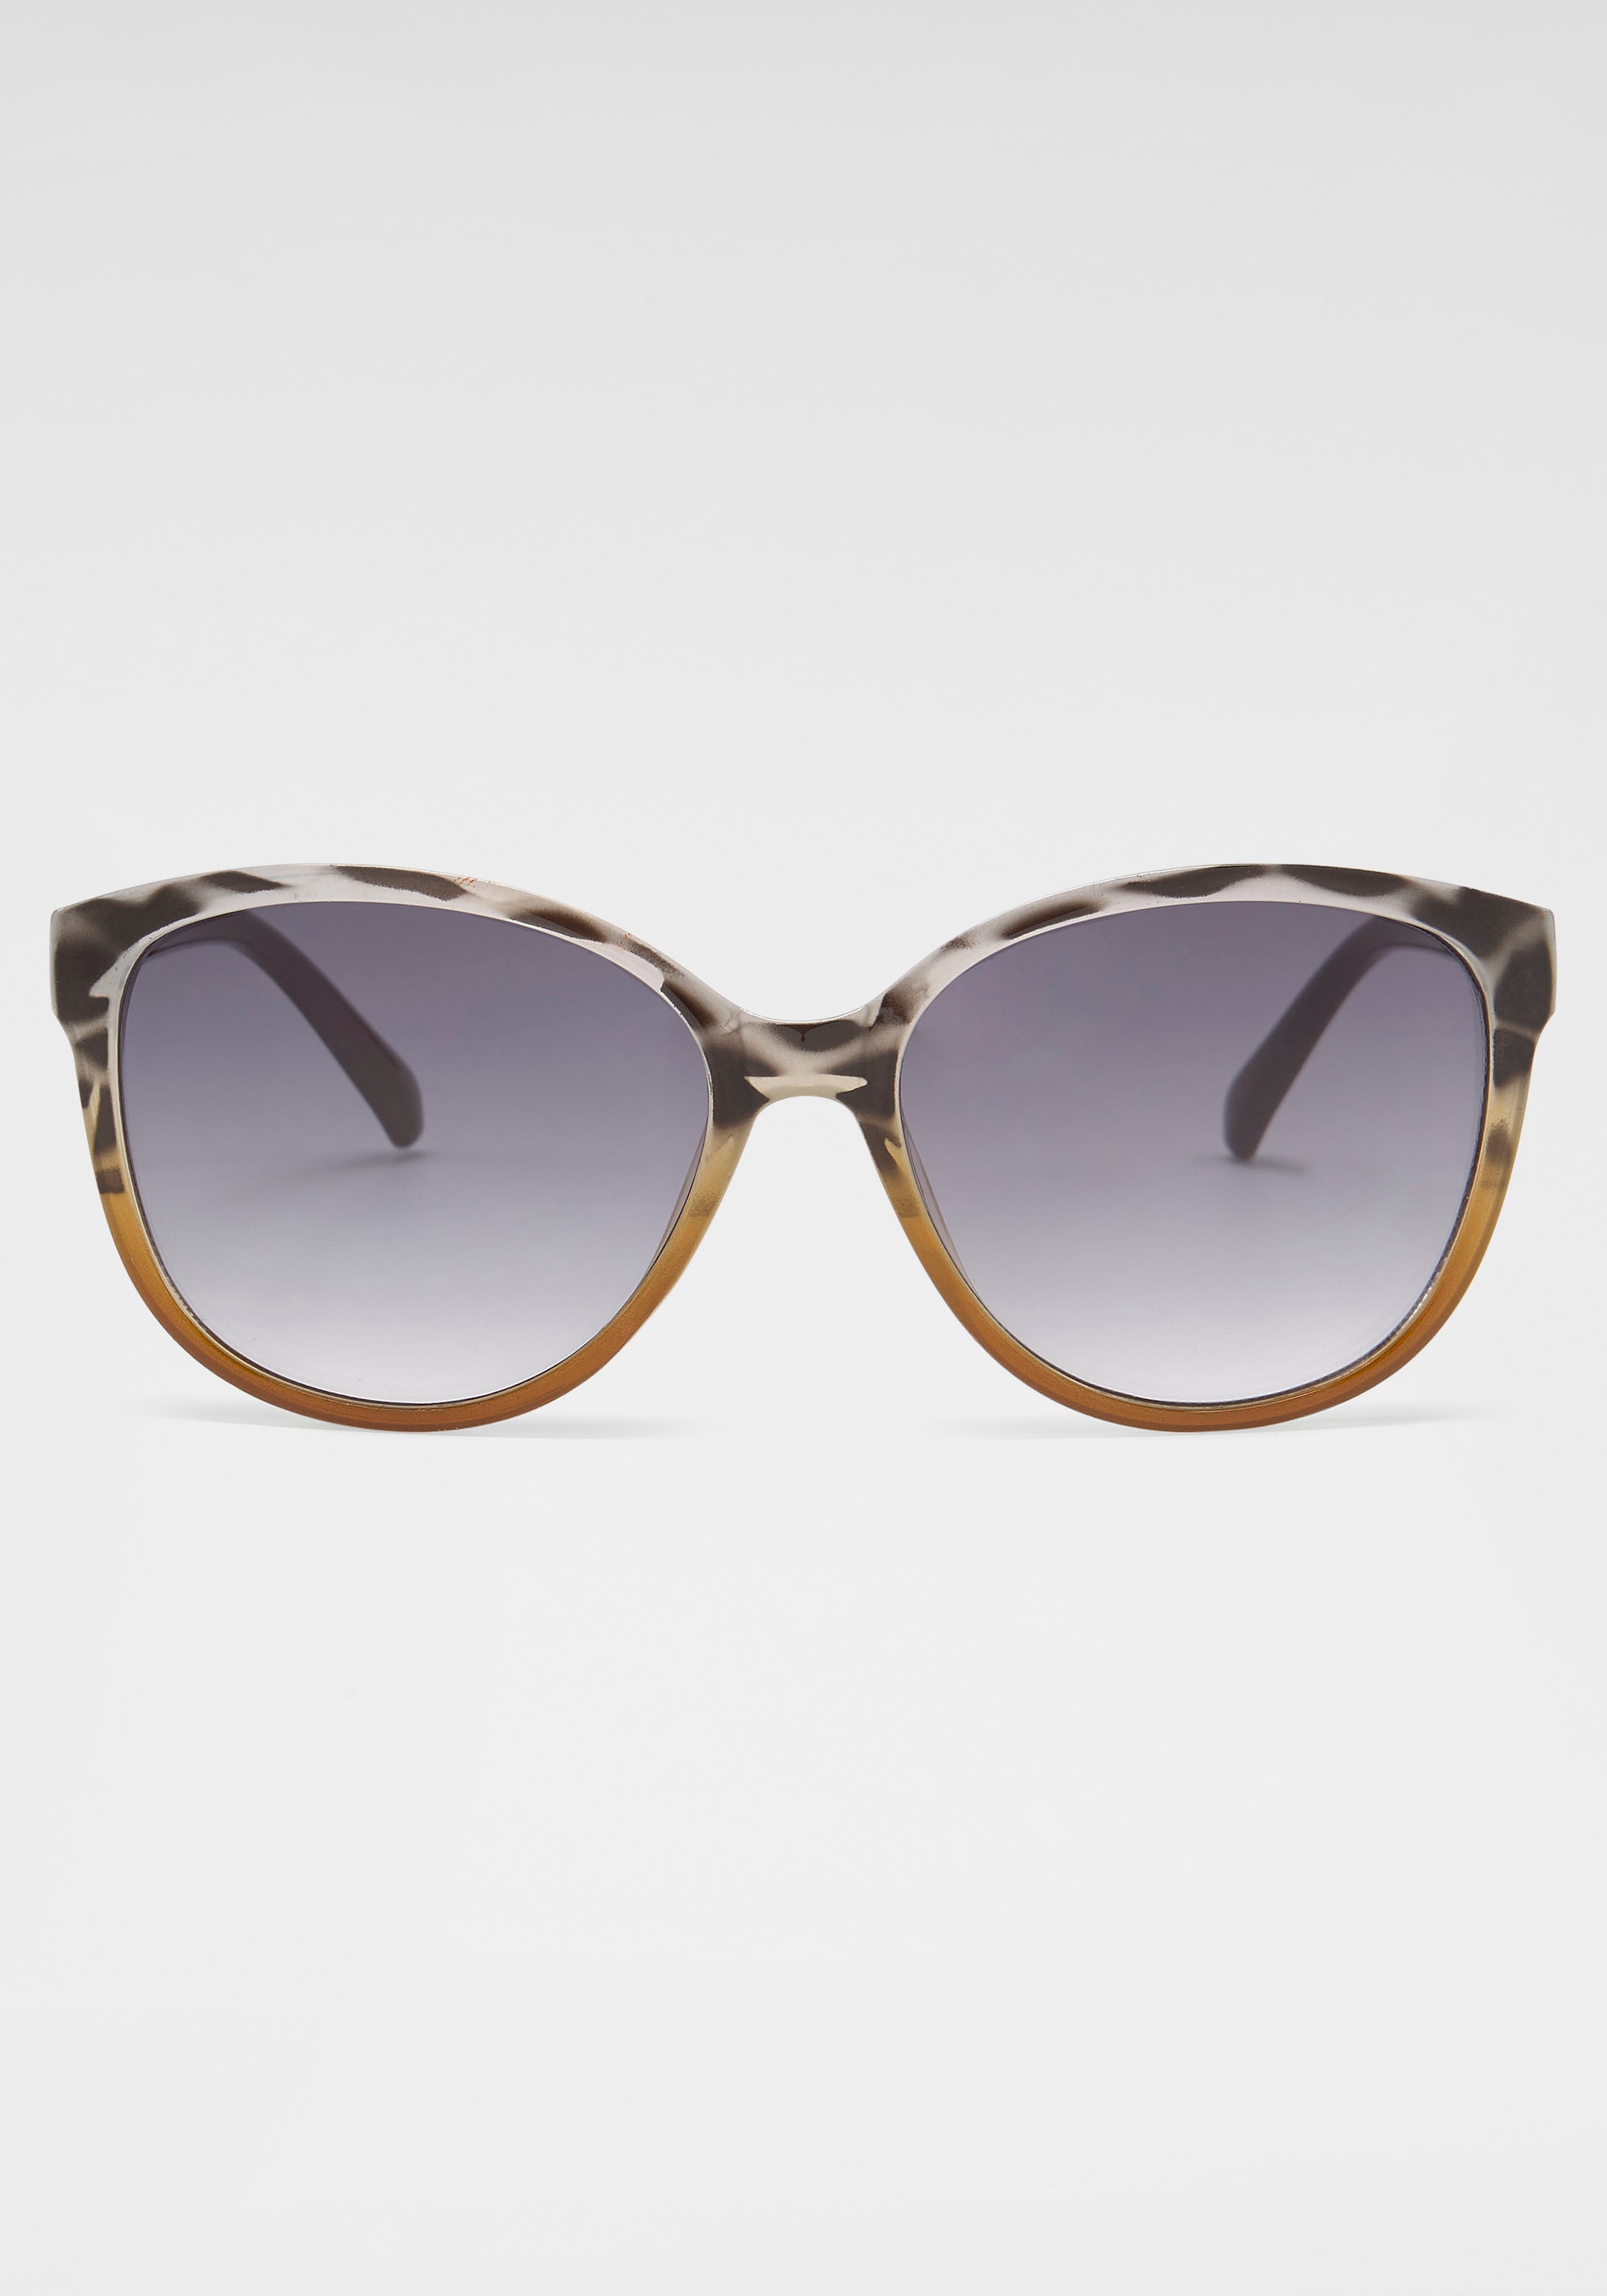 Schweiz Eyewear Sonnenbrille Jelmoli-Versand bei catwalk bestellen online